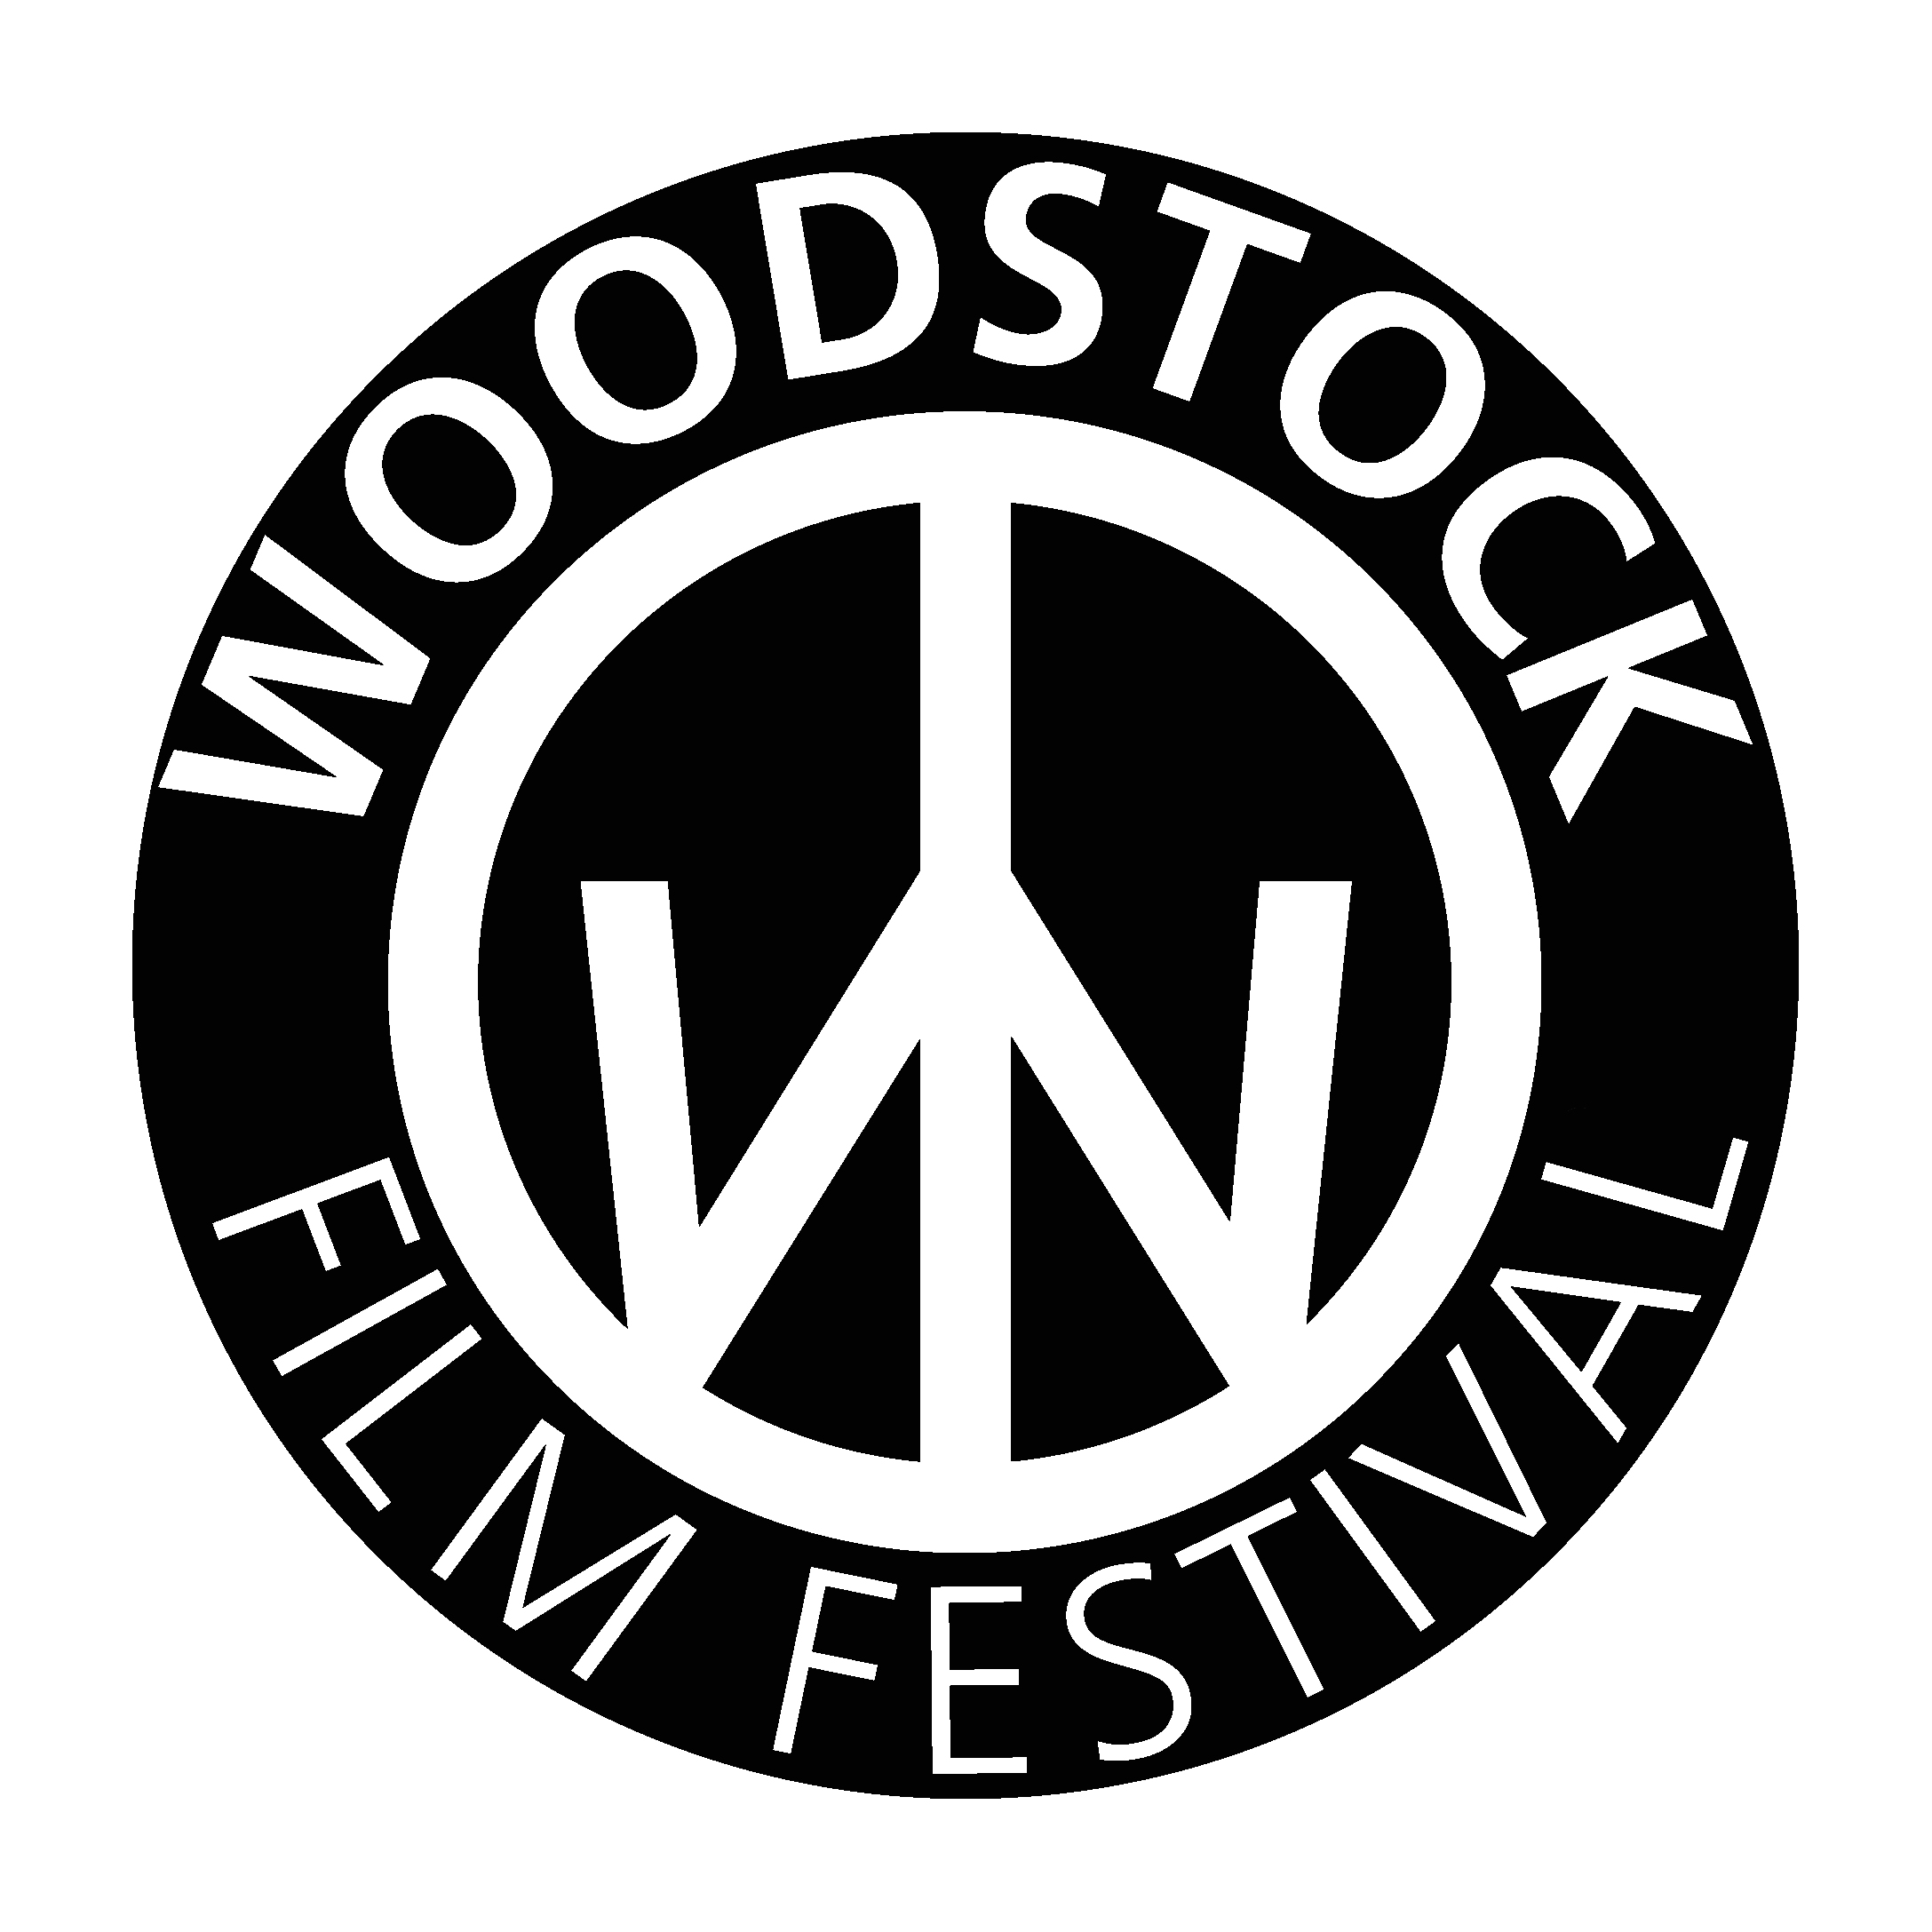 November Newsletter, Part II — Woodstock Film Festival